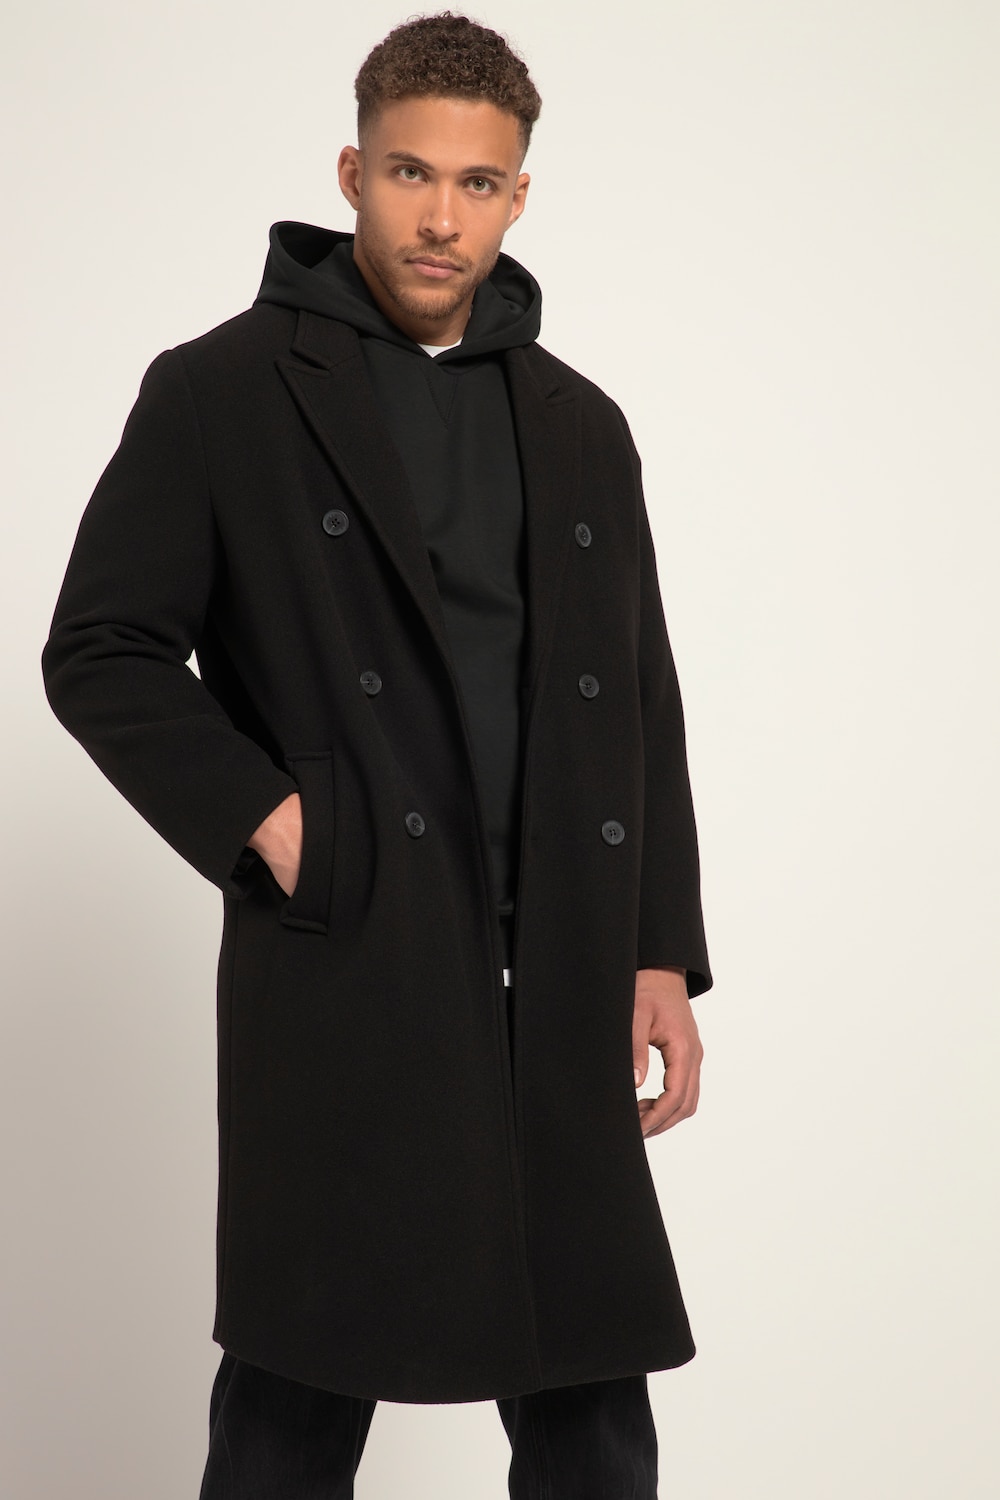 STHUGE Wolloptik-Mantel, Zweireiher, bis 8 XL